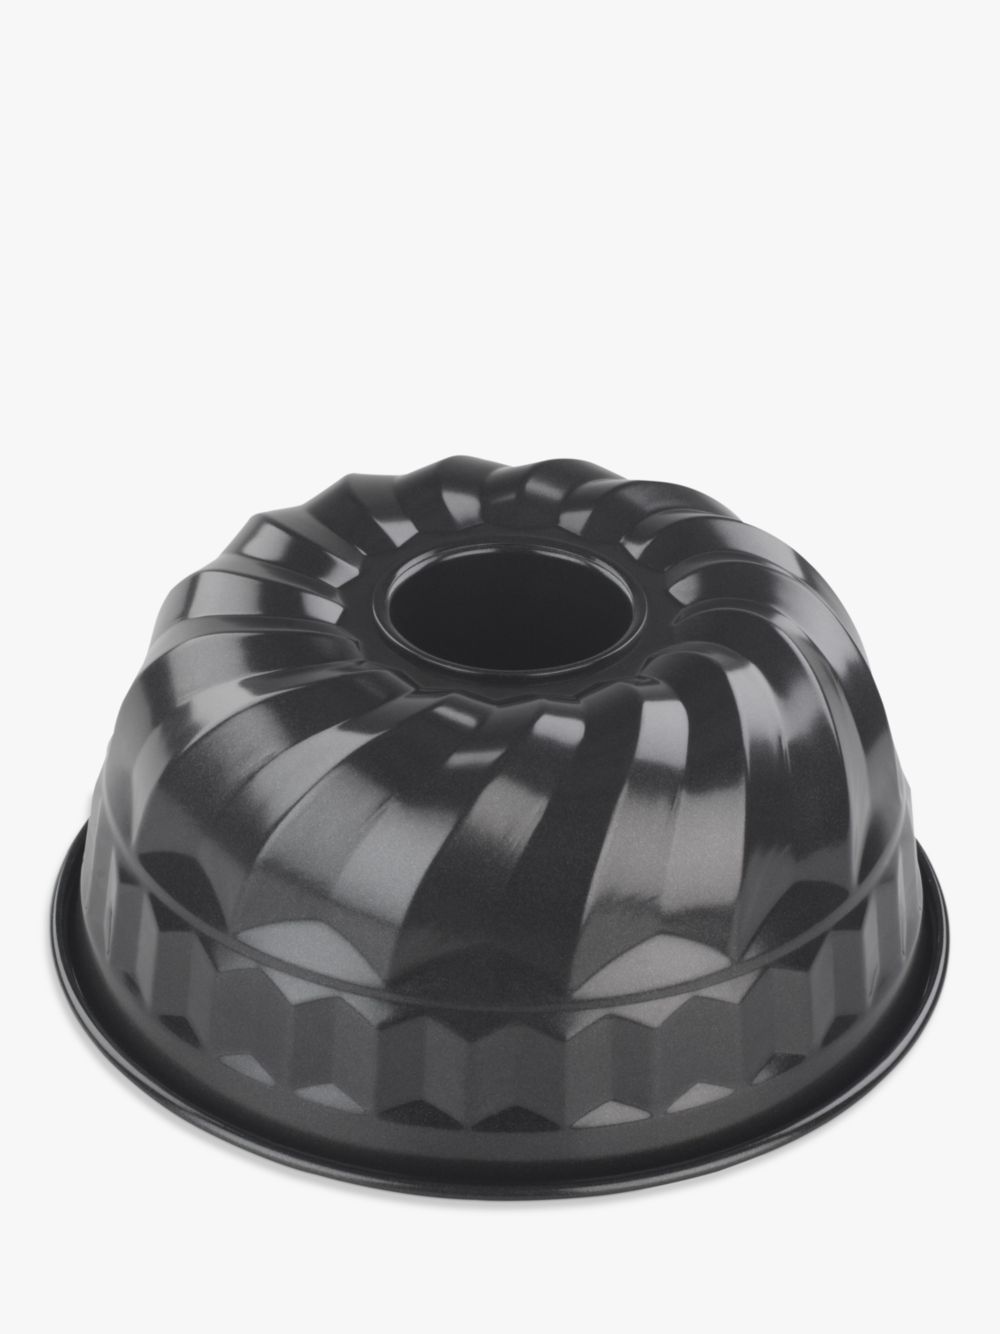 Профессиональная декоративная форма для торта John Lewis с антипригарным покрытием, 26 см форма для торта tvs dolci idee рифленая с низким бортом антипригарным покрытием